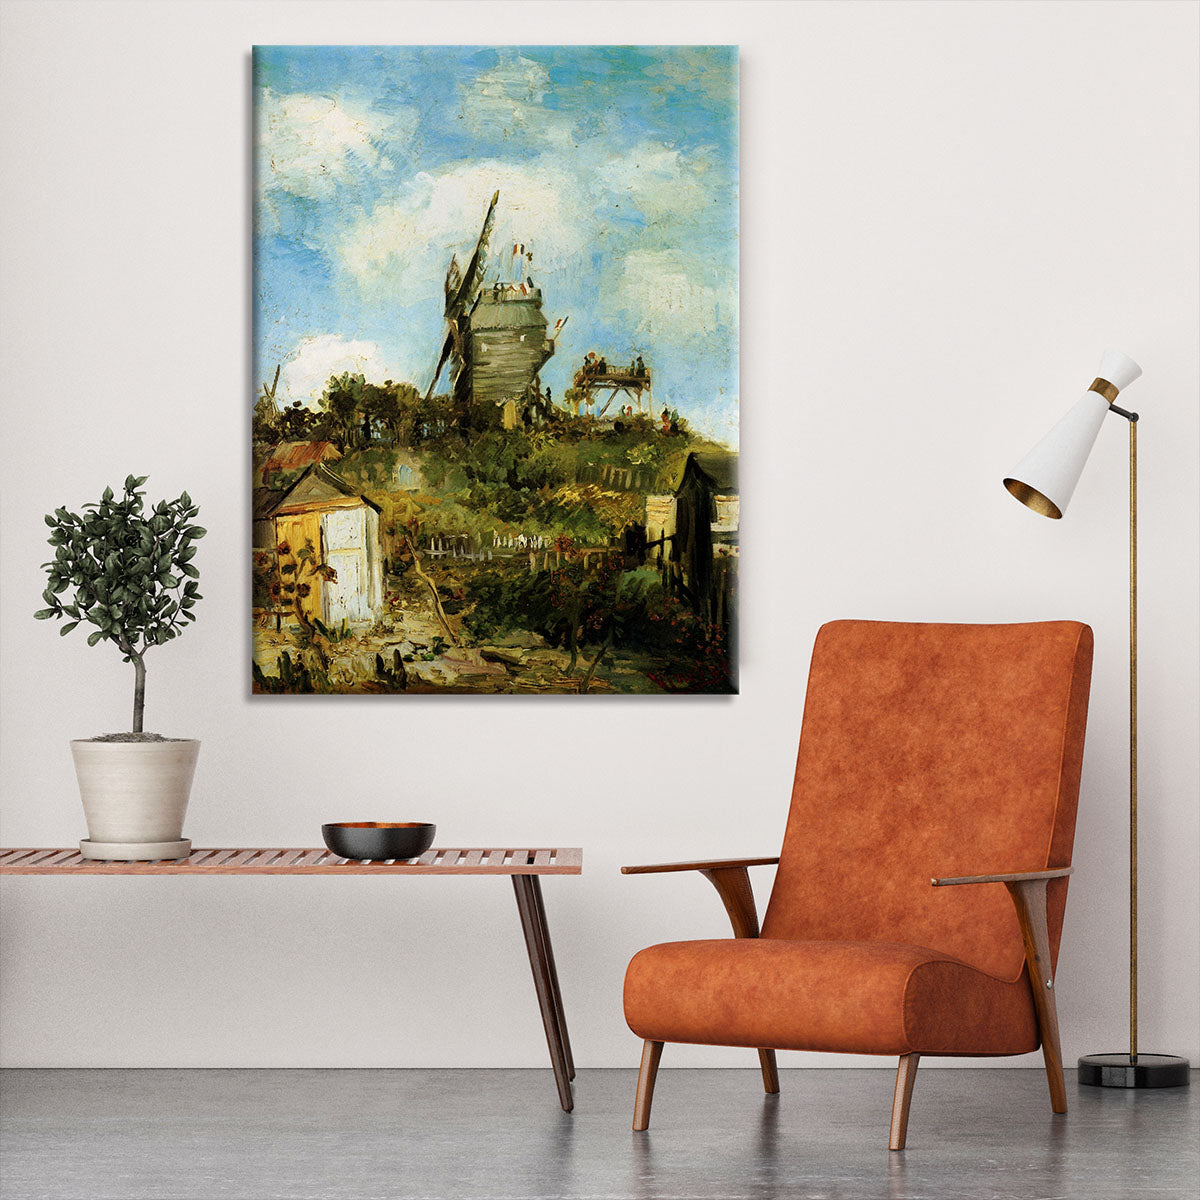 Le Moulin de la Galette by Van Gogh Canvas Print or Poster - Canvas Art Rocks - 6